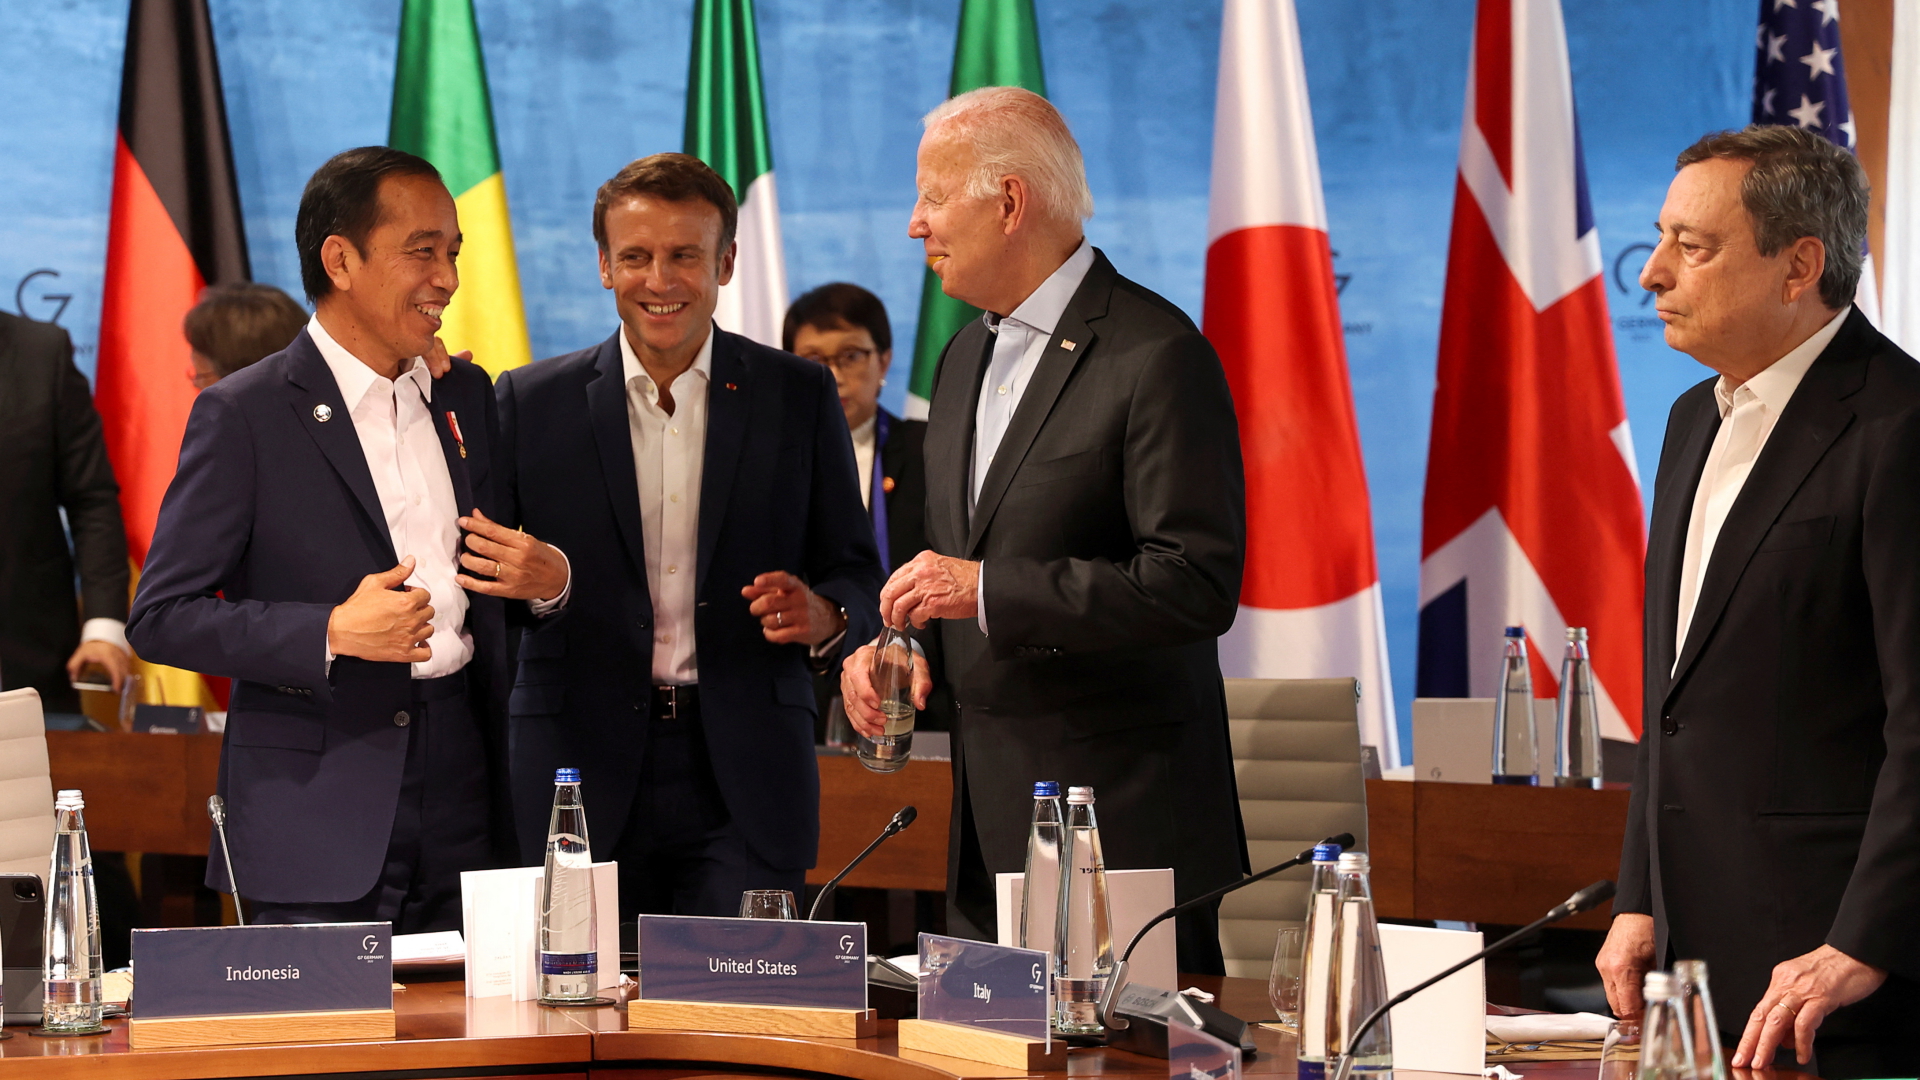 US-Präsident Joe Biden (2.v.r.) spricht beim G7-Gipfel auf Schloss Elmau mit den Regierungschefs aus Japan, Fumio Kishida (links), Frankreich, Emmanuel Macron (2.v.l.), und Italien, Mario Draghi. | REUTERS